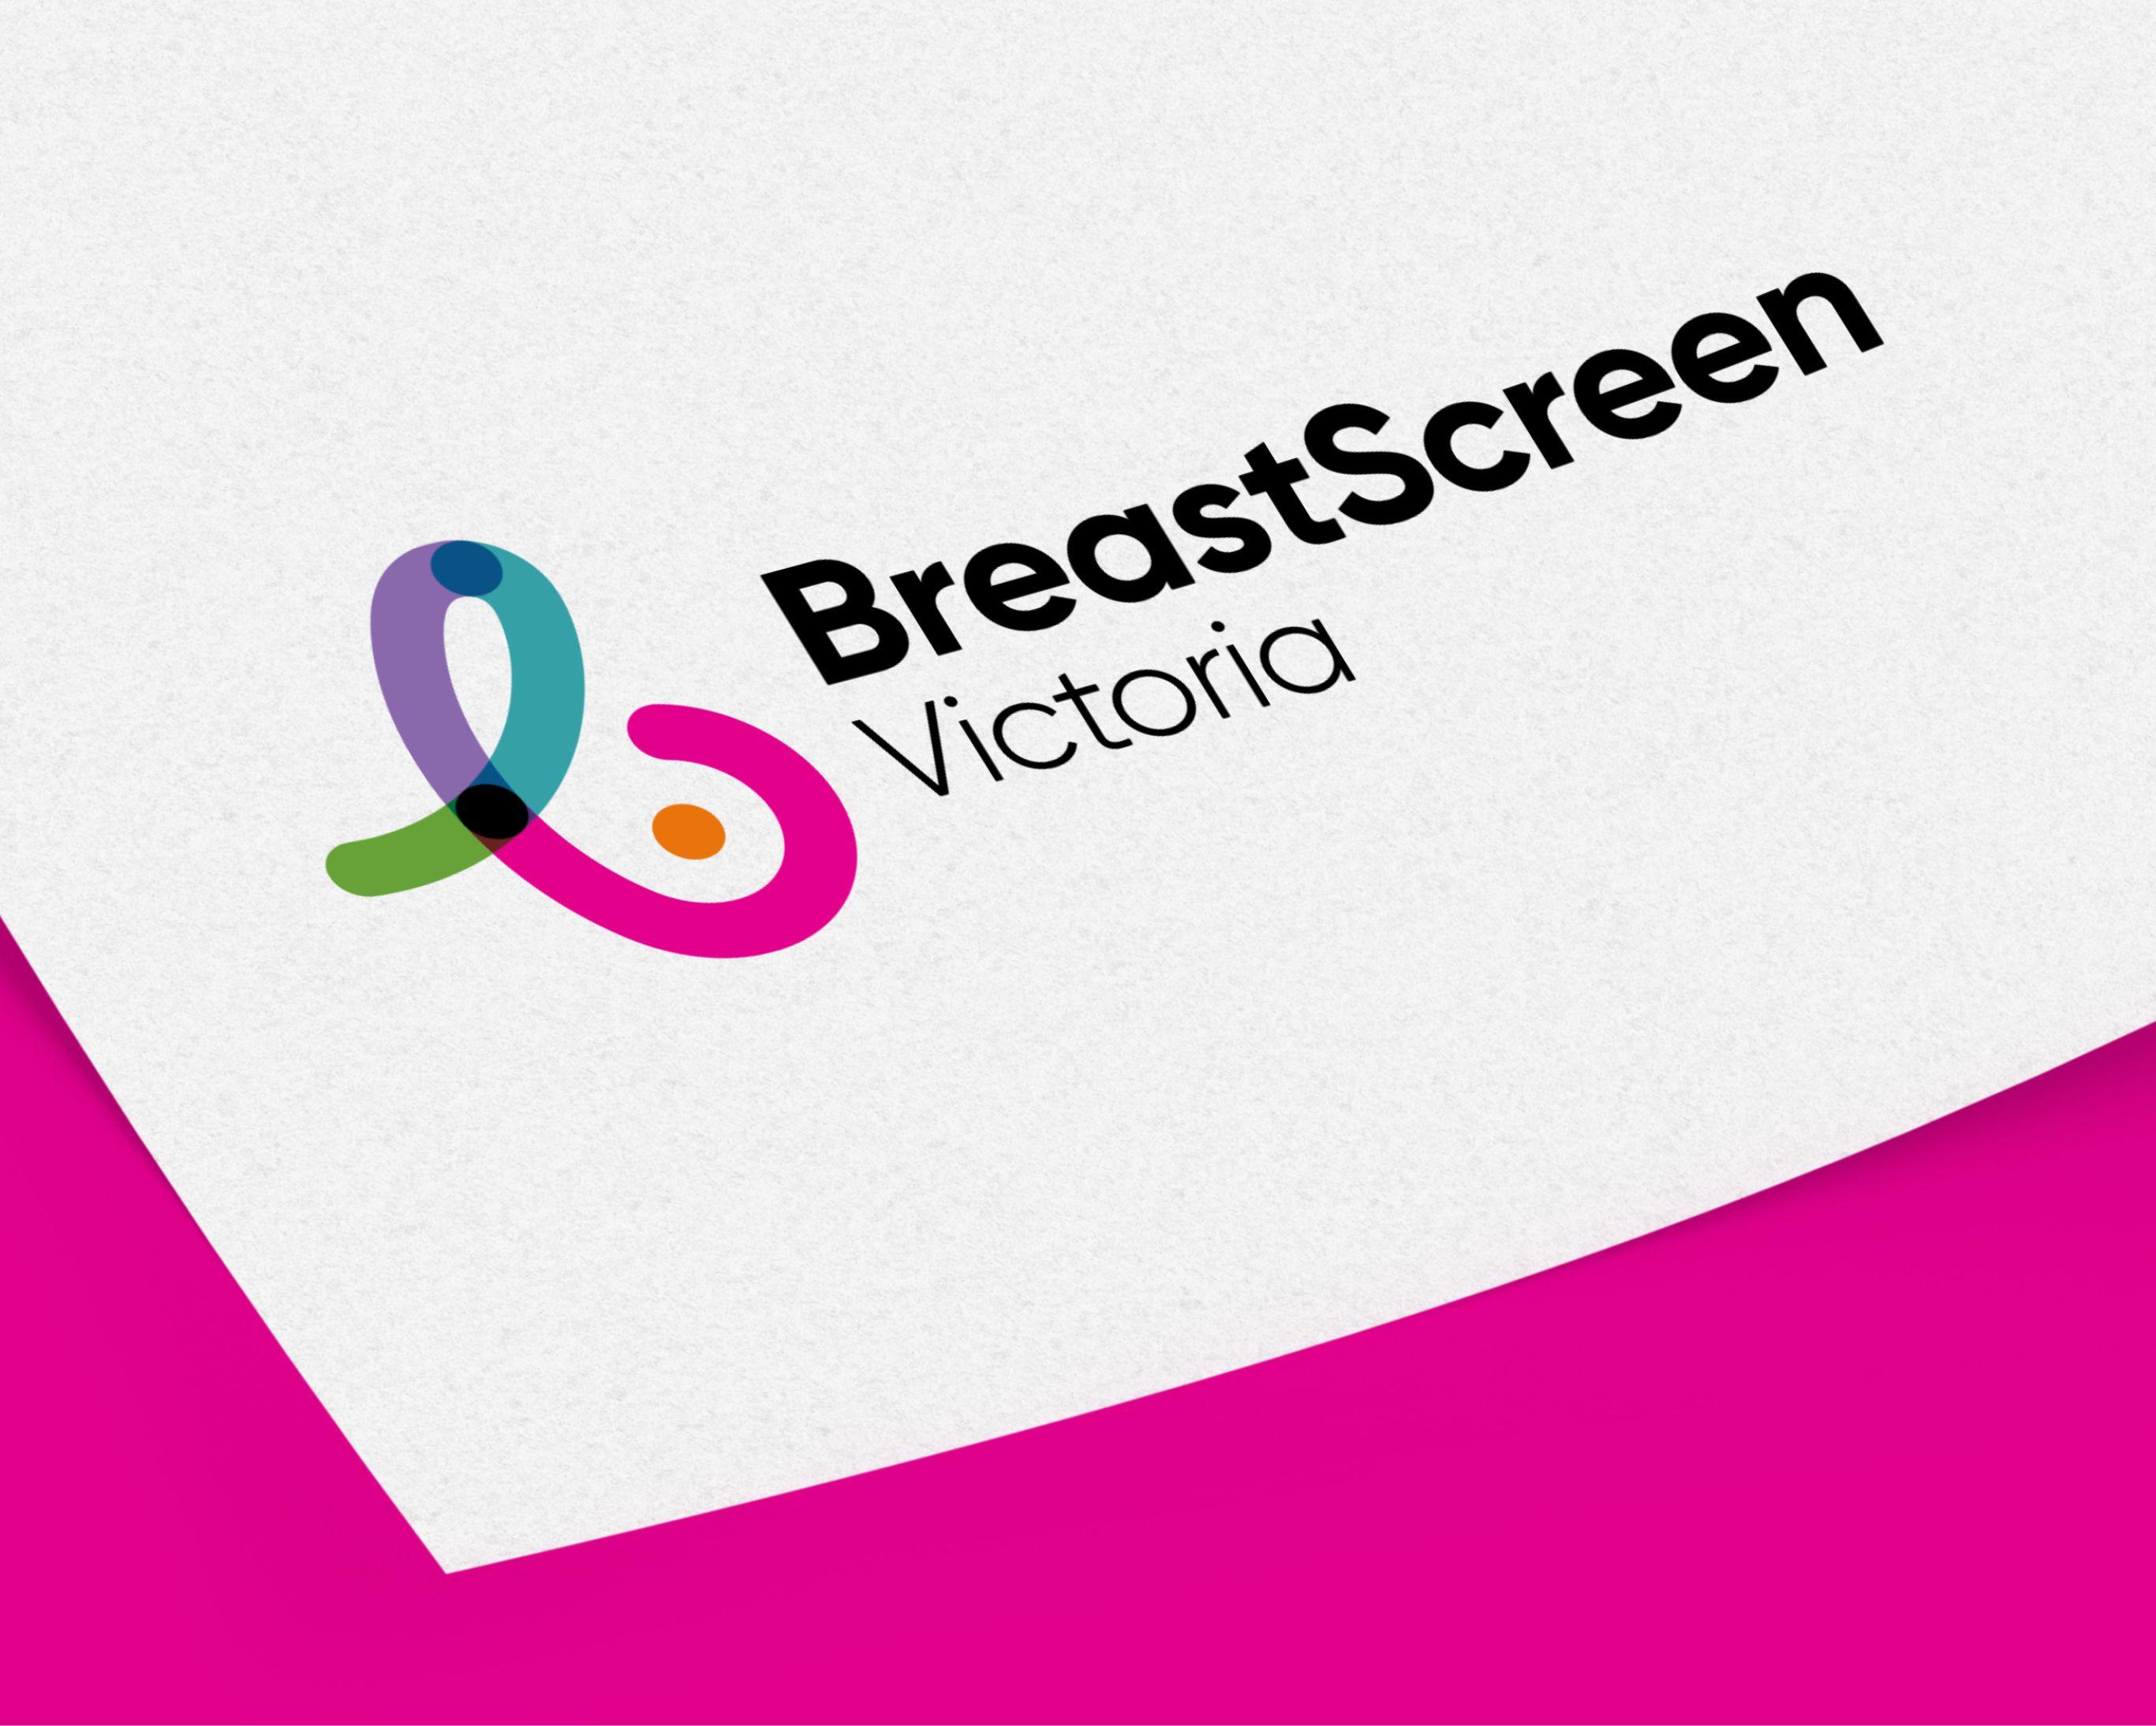 BreastScreen Victoria Corporate Identity Refresh